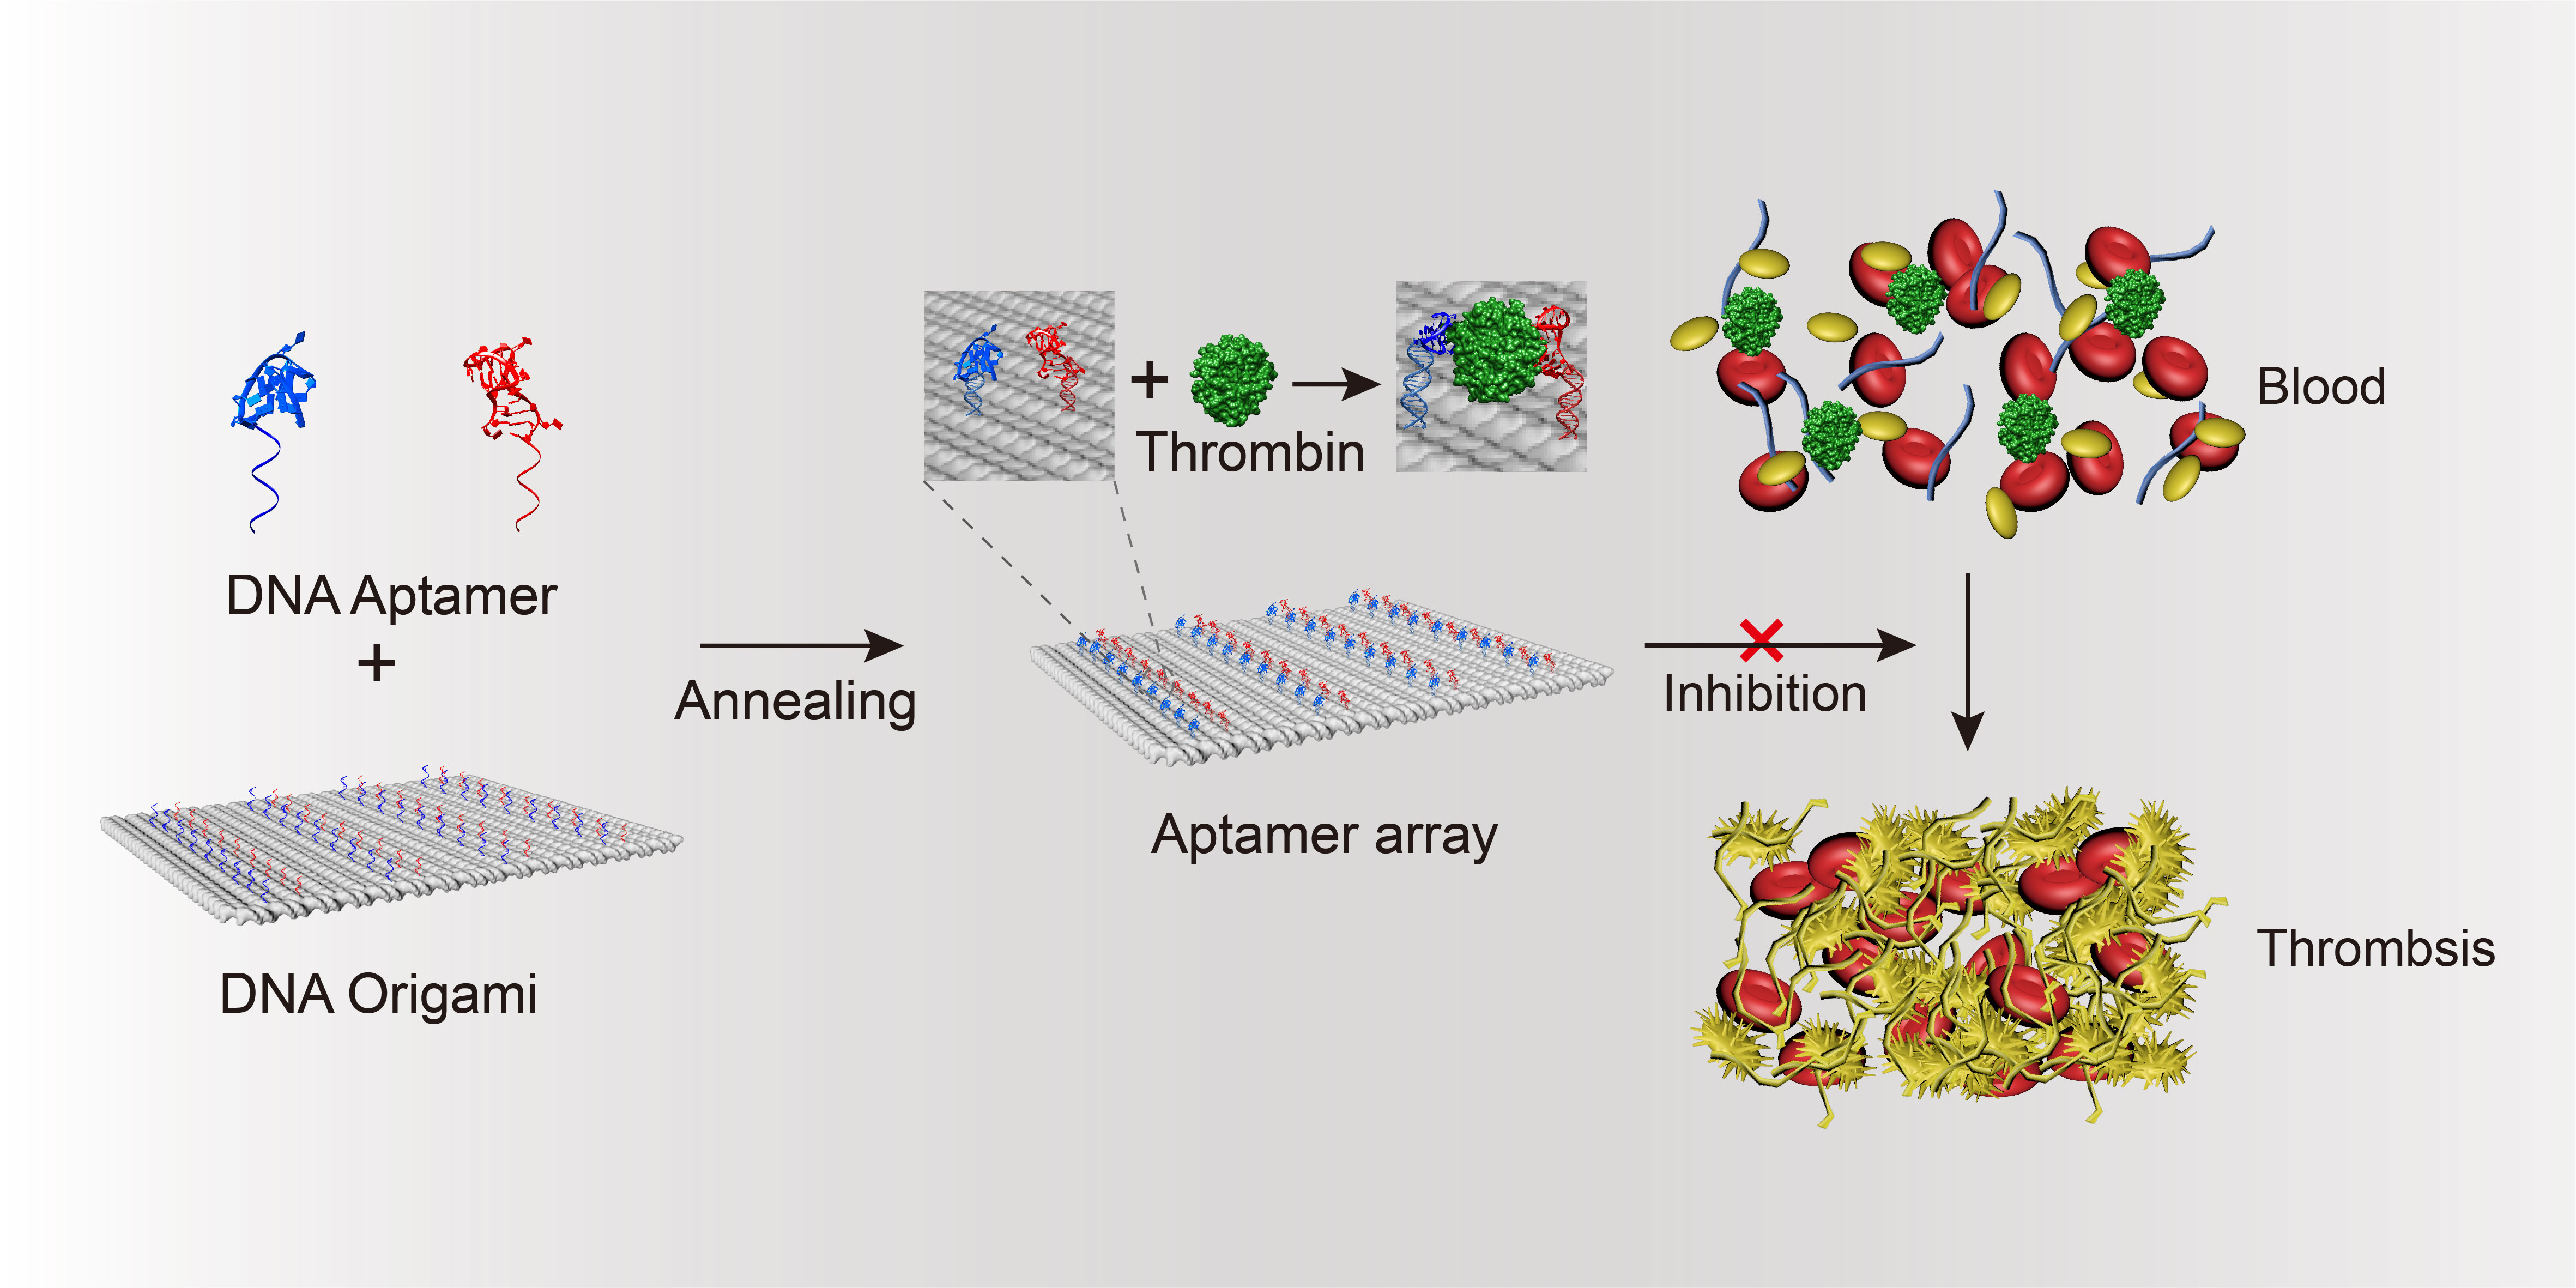 丁宝全课题组在基于DNA折纸结构的纳米抗凝剂方面取得新进展